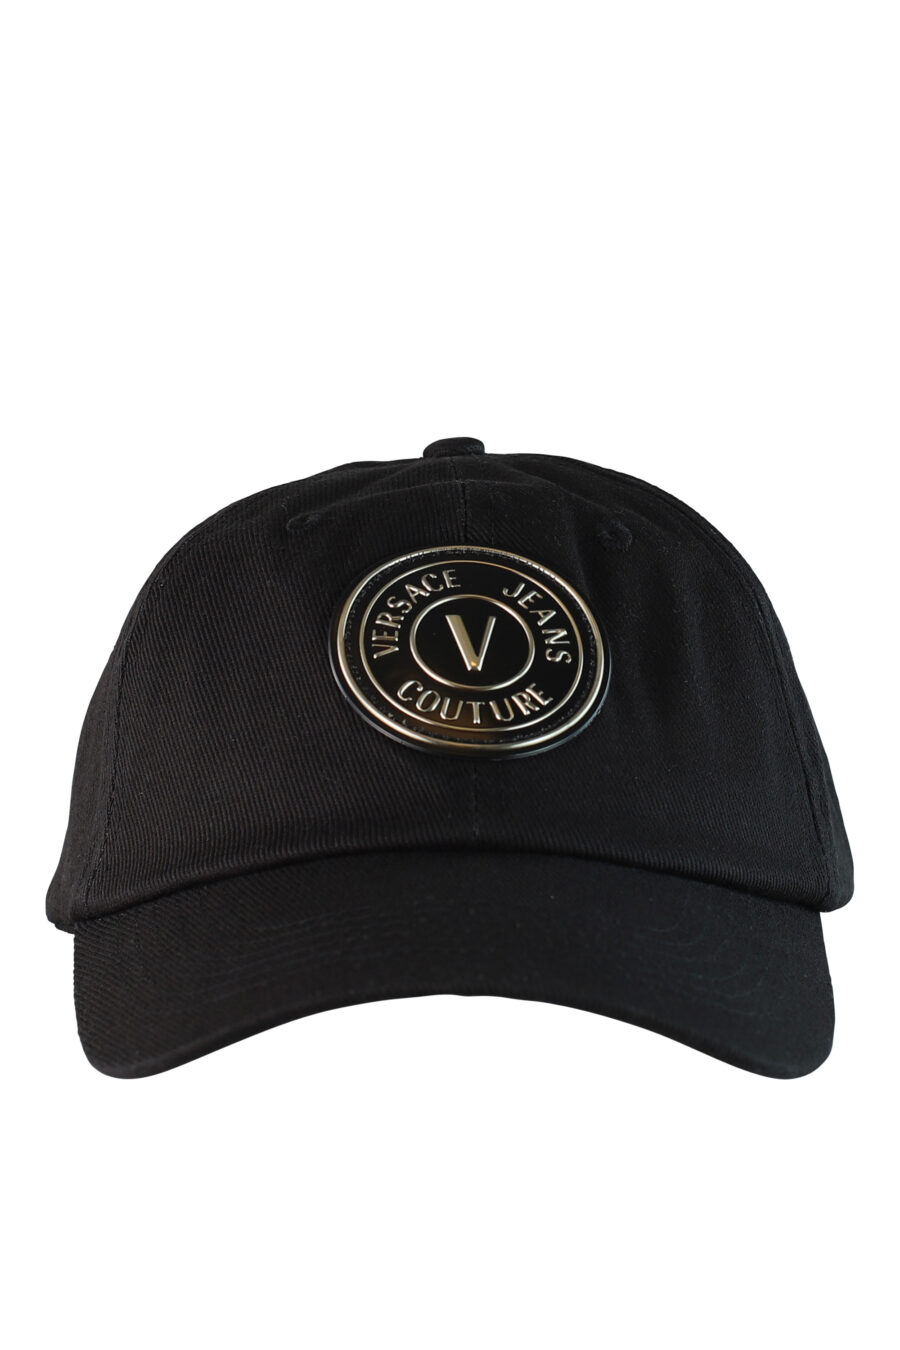 Gorra negra con logo circular dorado - IMG 0502